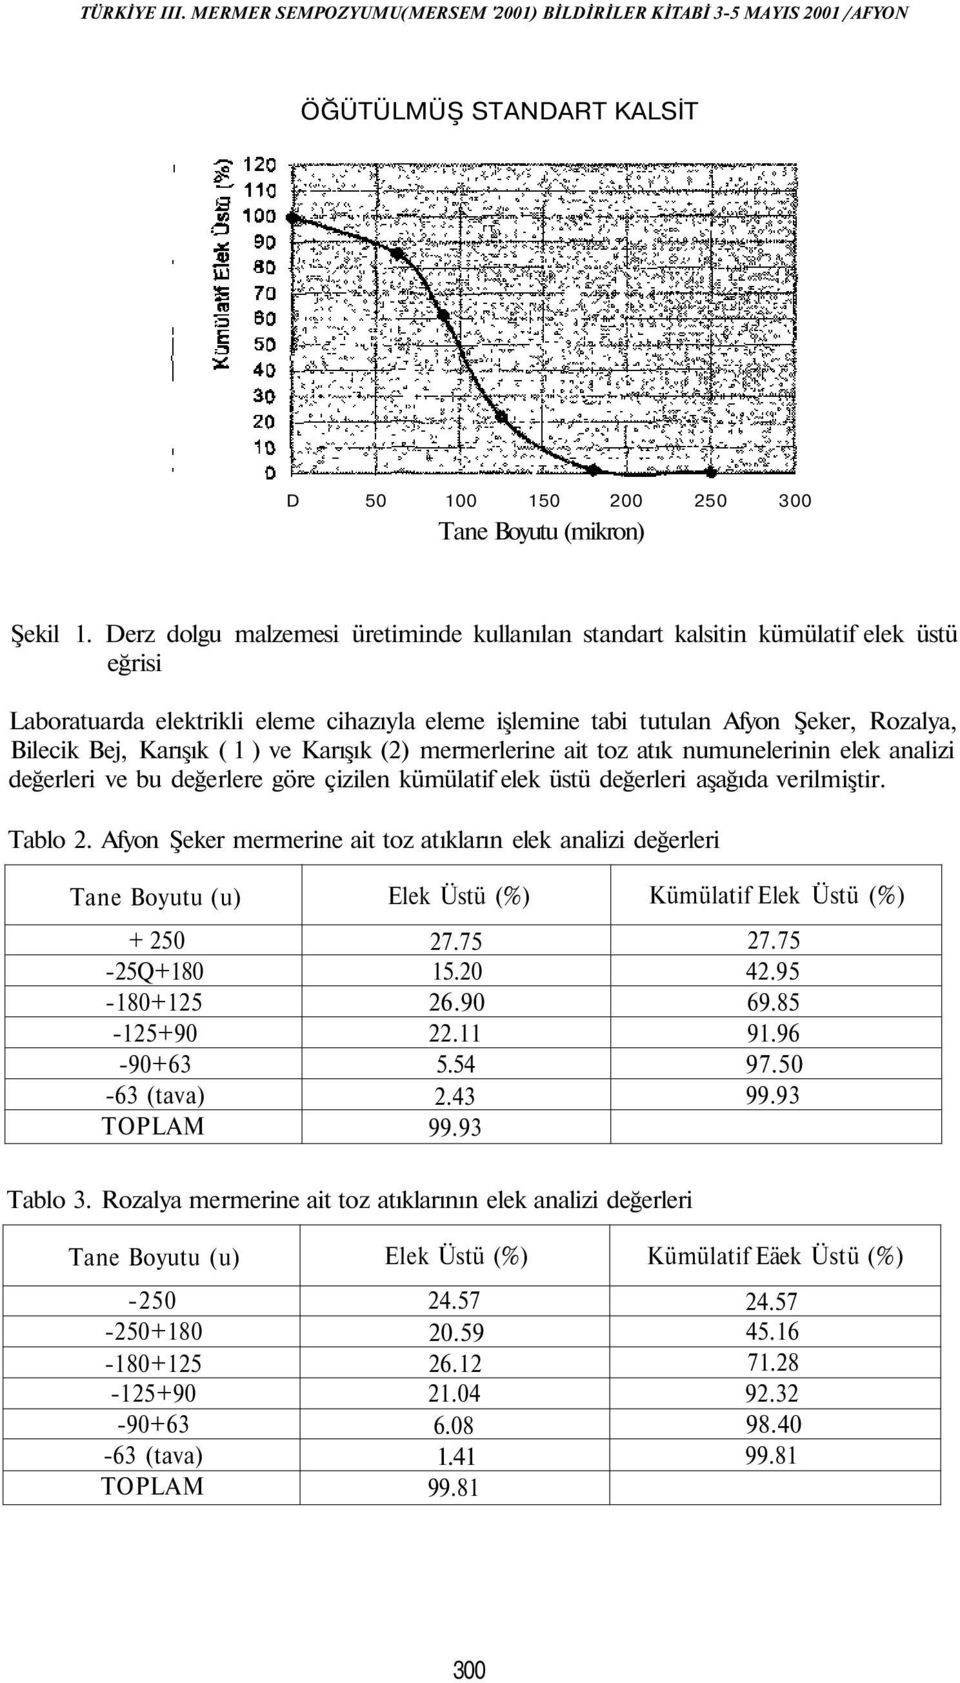 ( 1 ) ve Karışık (2) mermerlerine ait toz atık numunelerinin elek analizi değerleri ve bu değerlere göre çizilen kümülatif elek üstü değerleri aşağıda verilmiştir. Tablo 2.